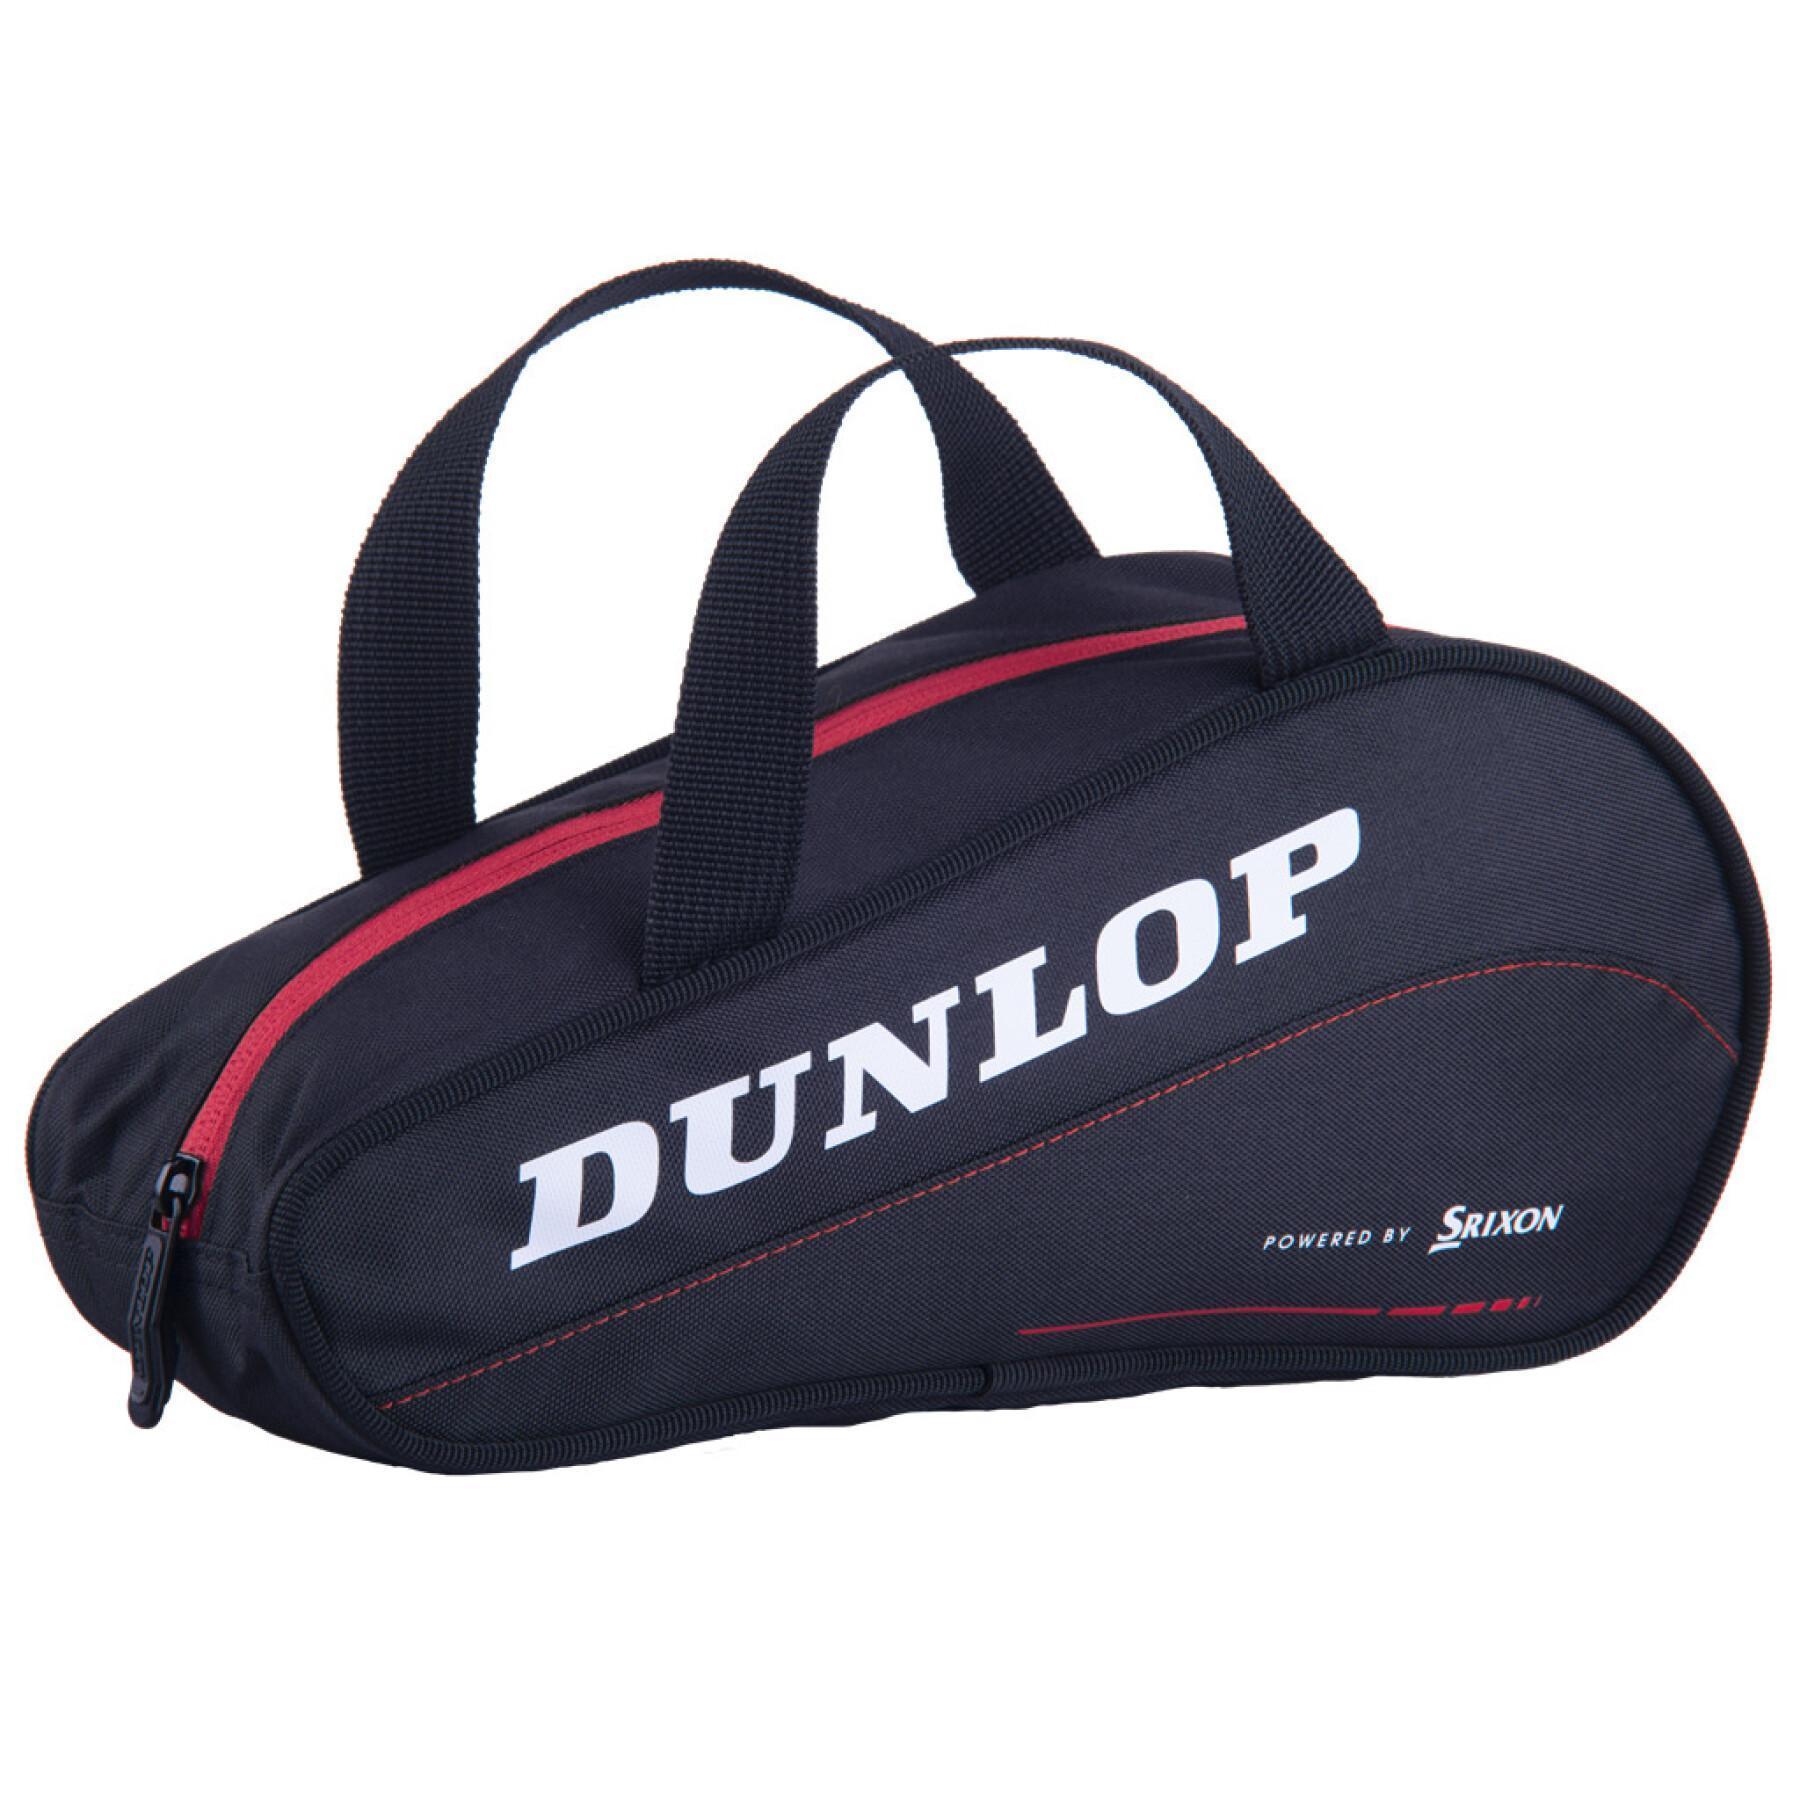 Bolsa de raqueta Dunlop cx performance mini